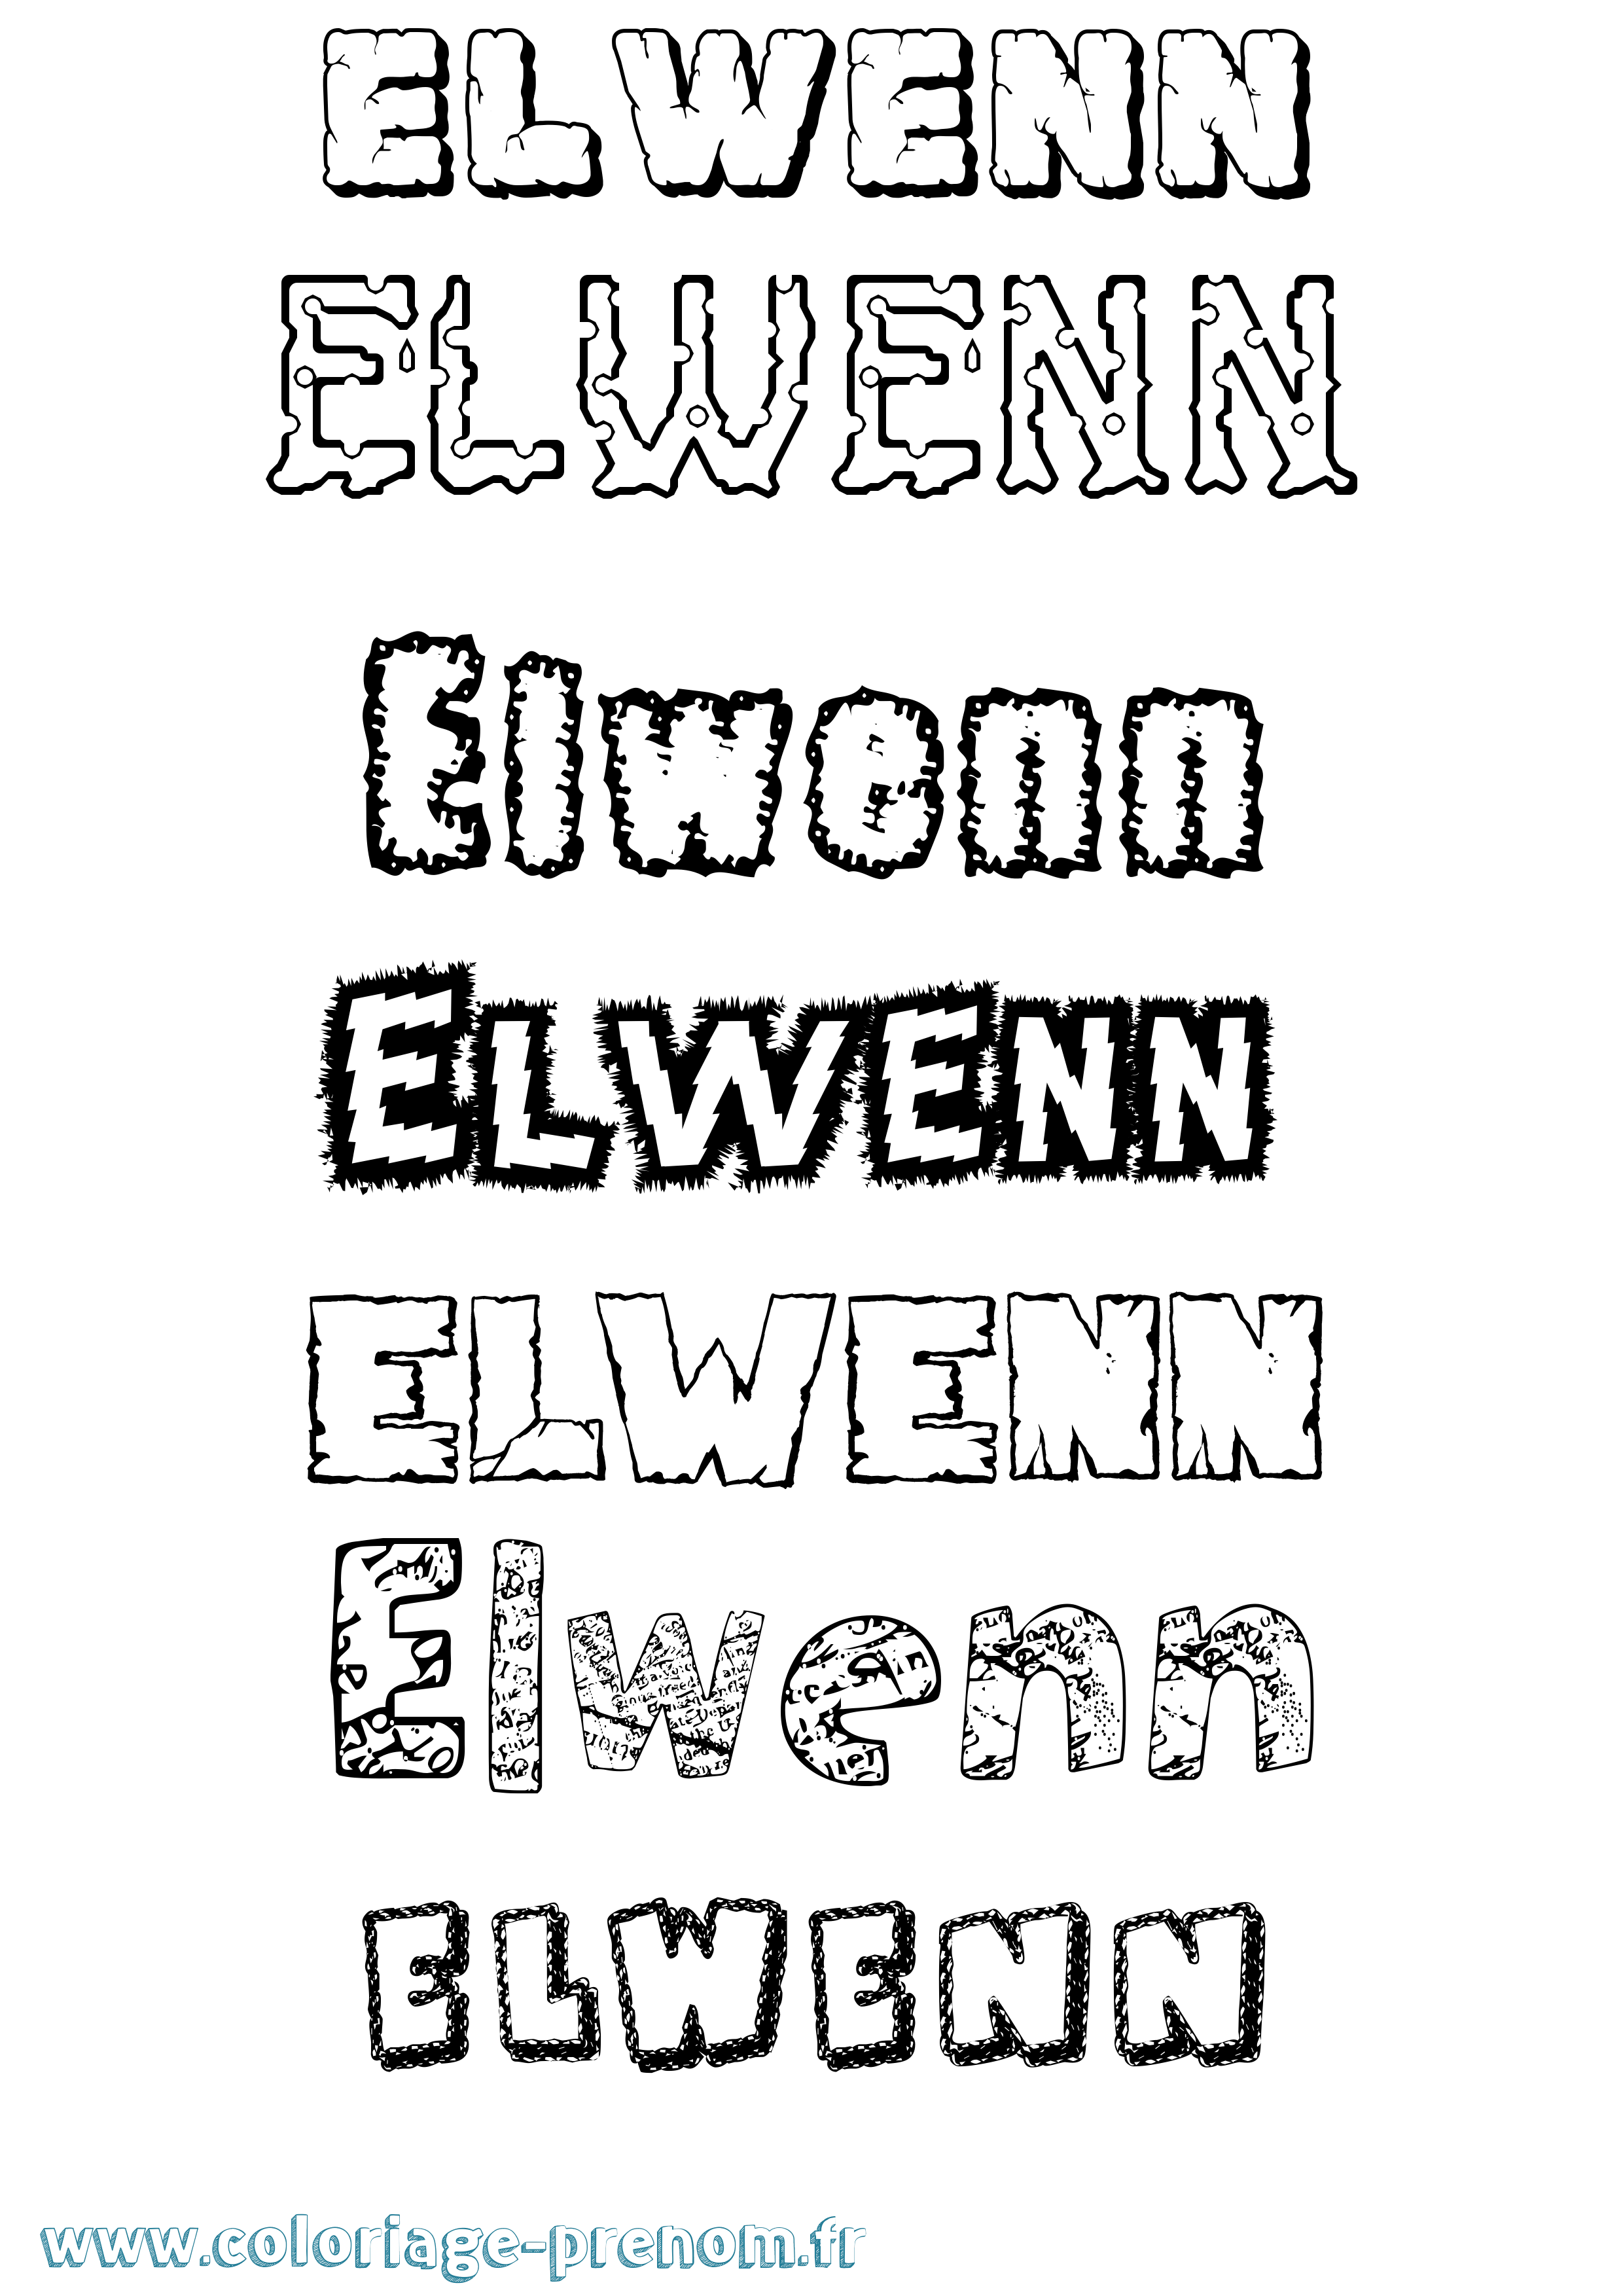 Coloriage prénom Elwenn Destructuré